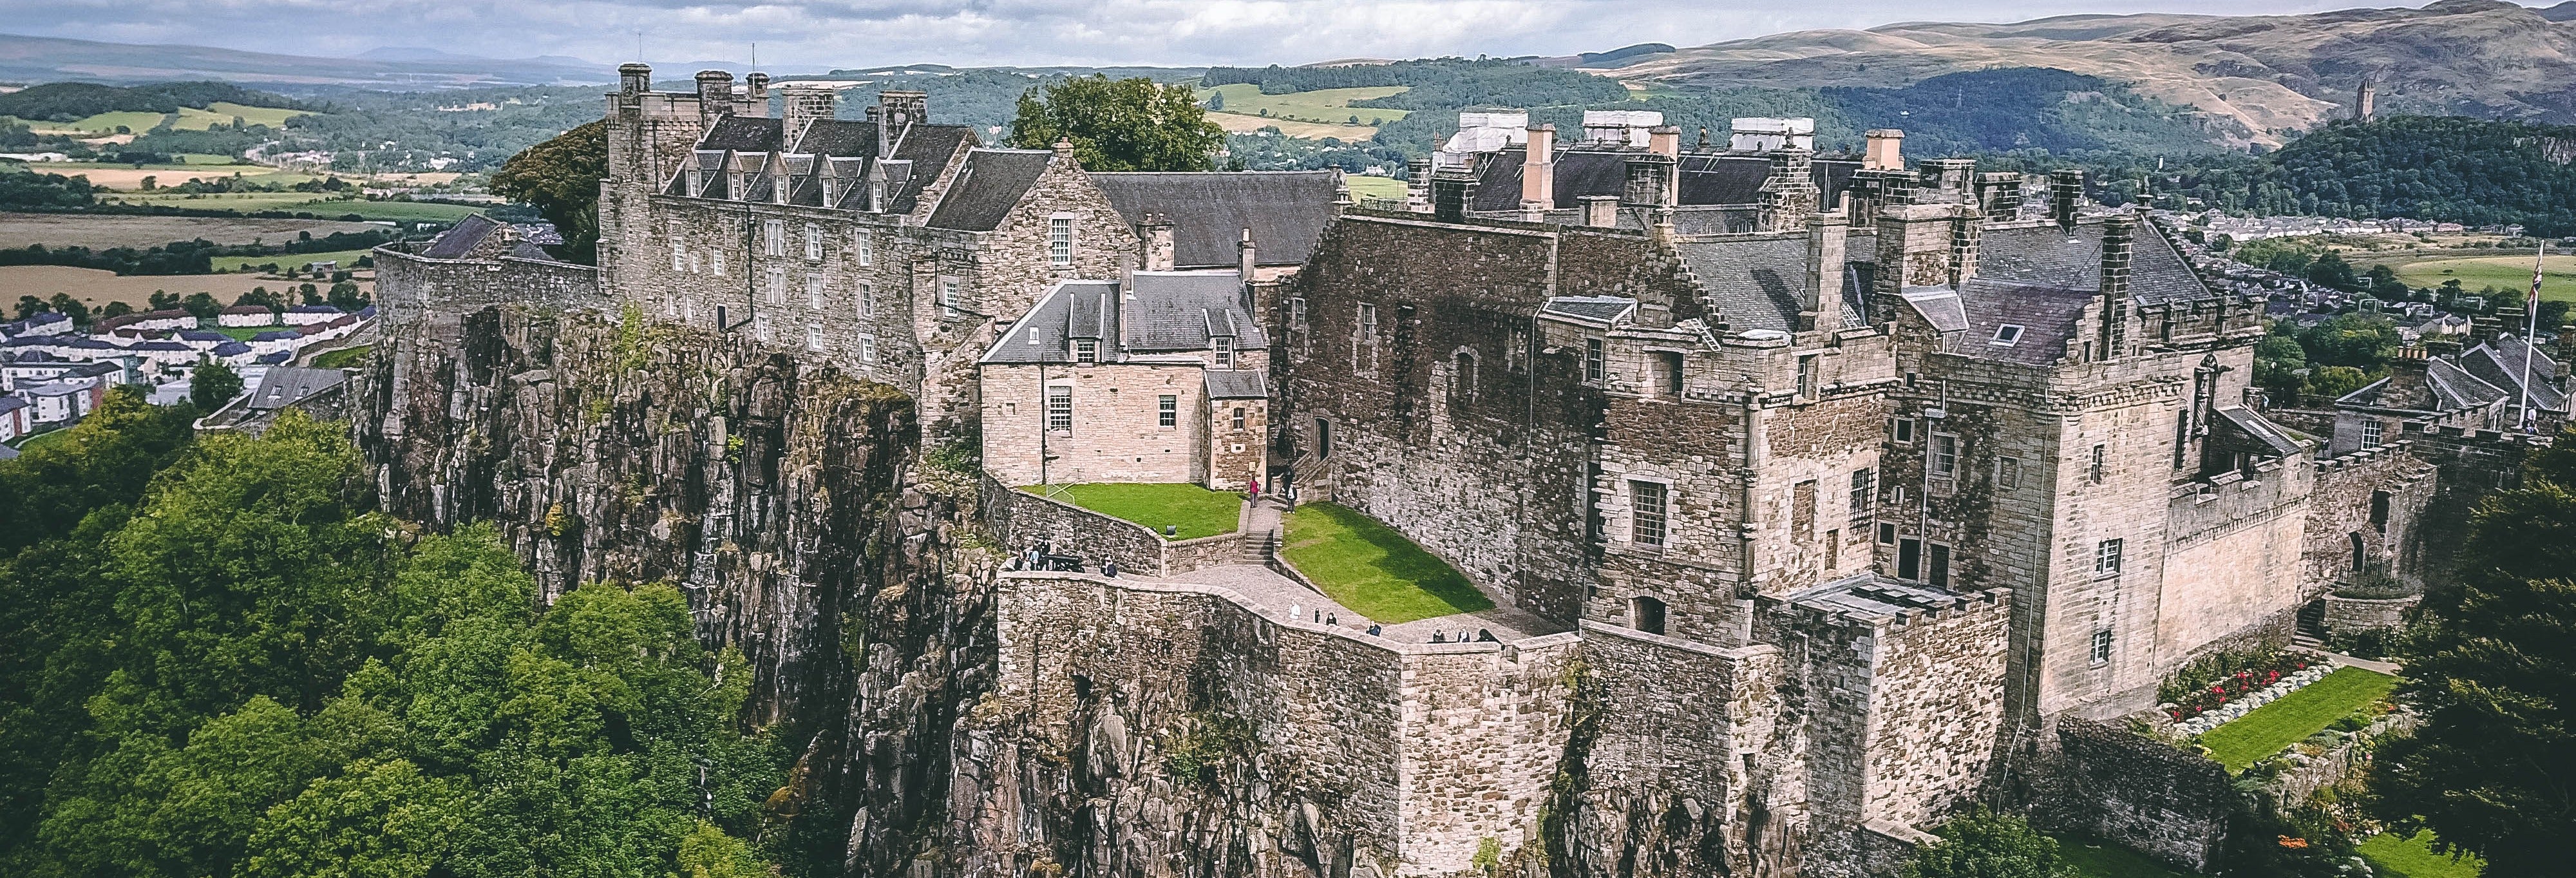 Excursão a Loch Lomond, Trossachs e Castelo de Stirling